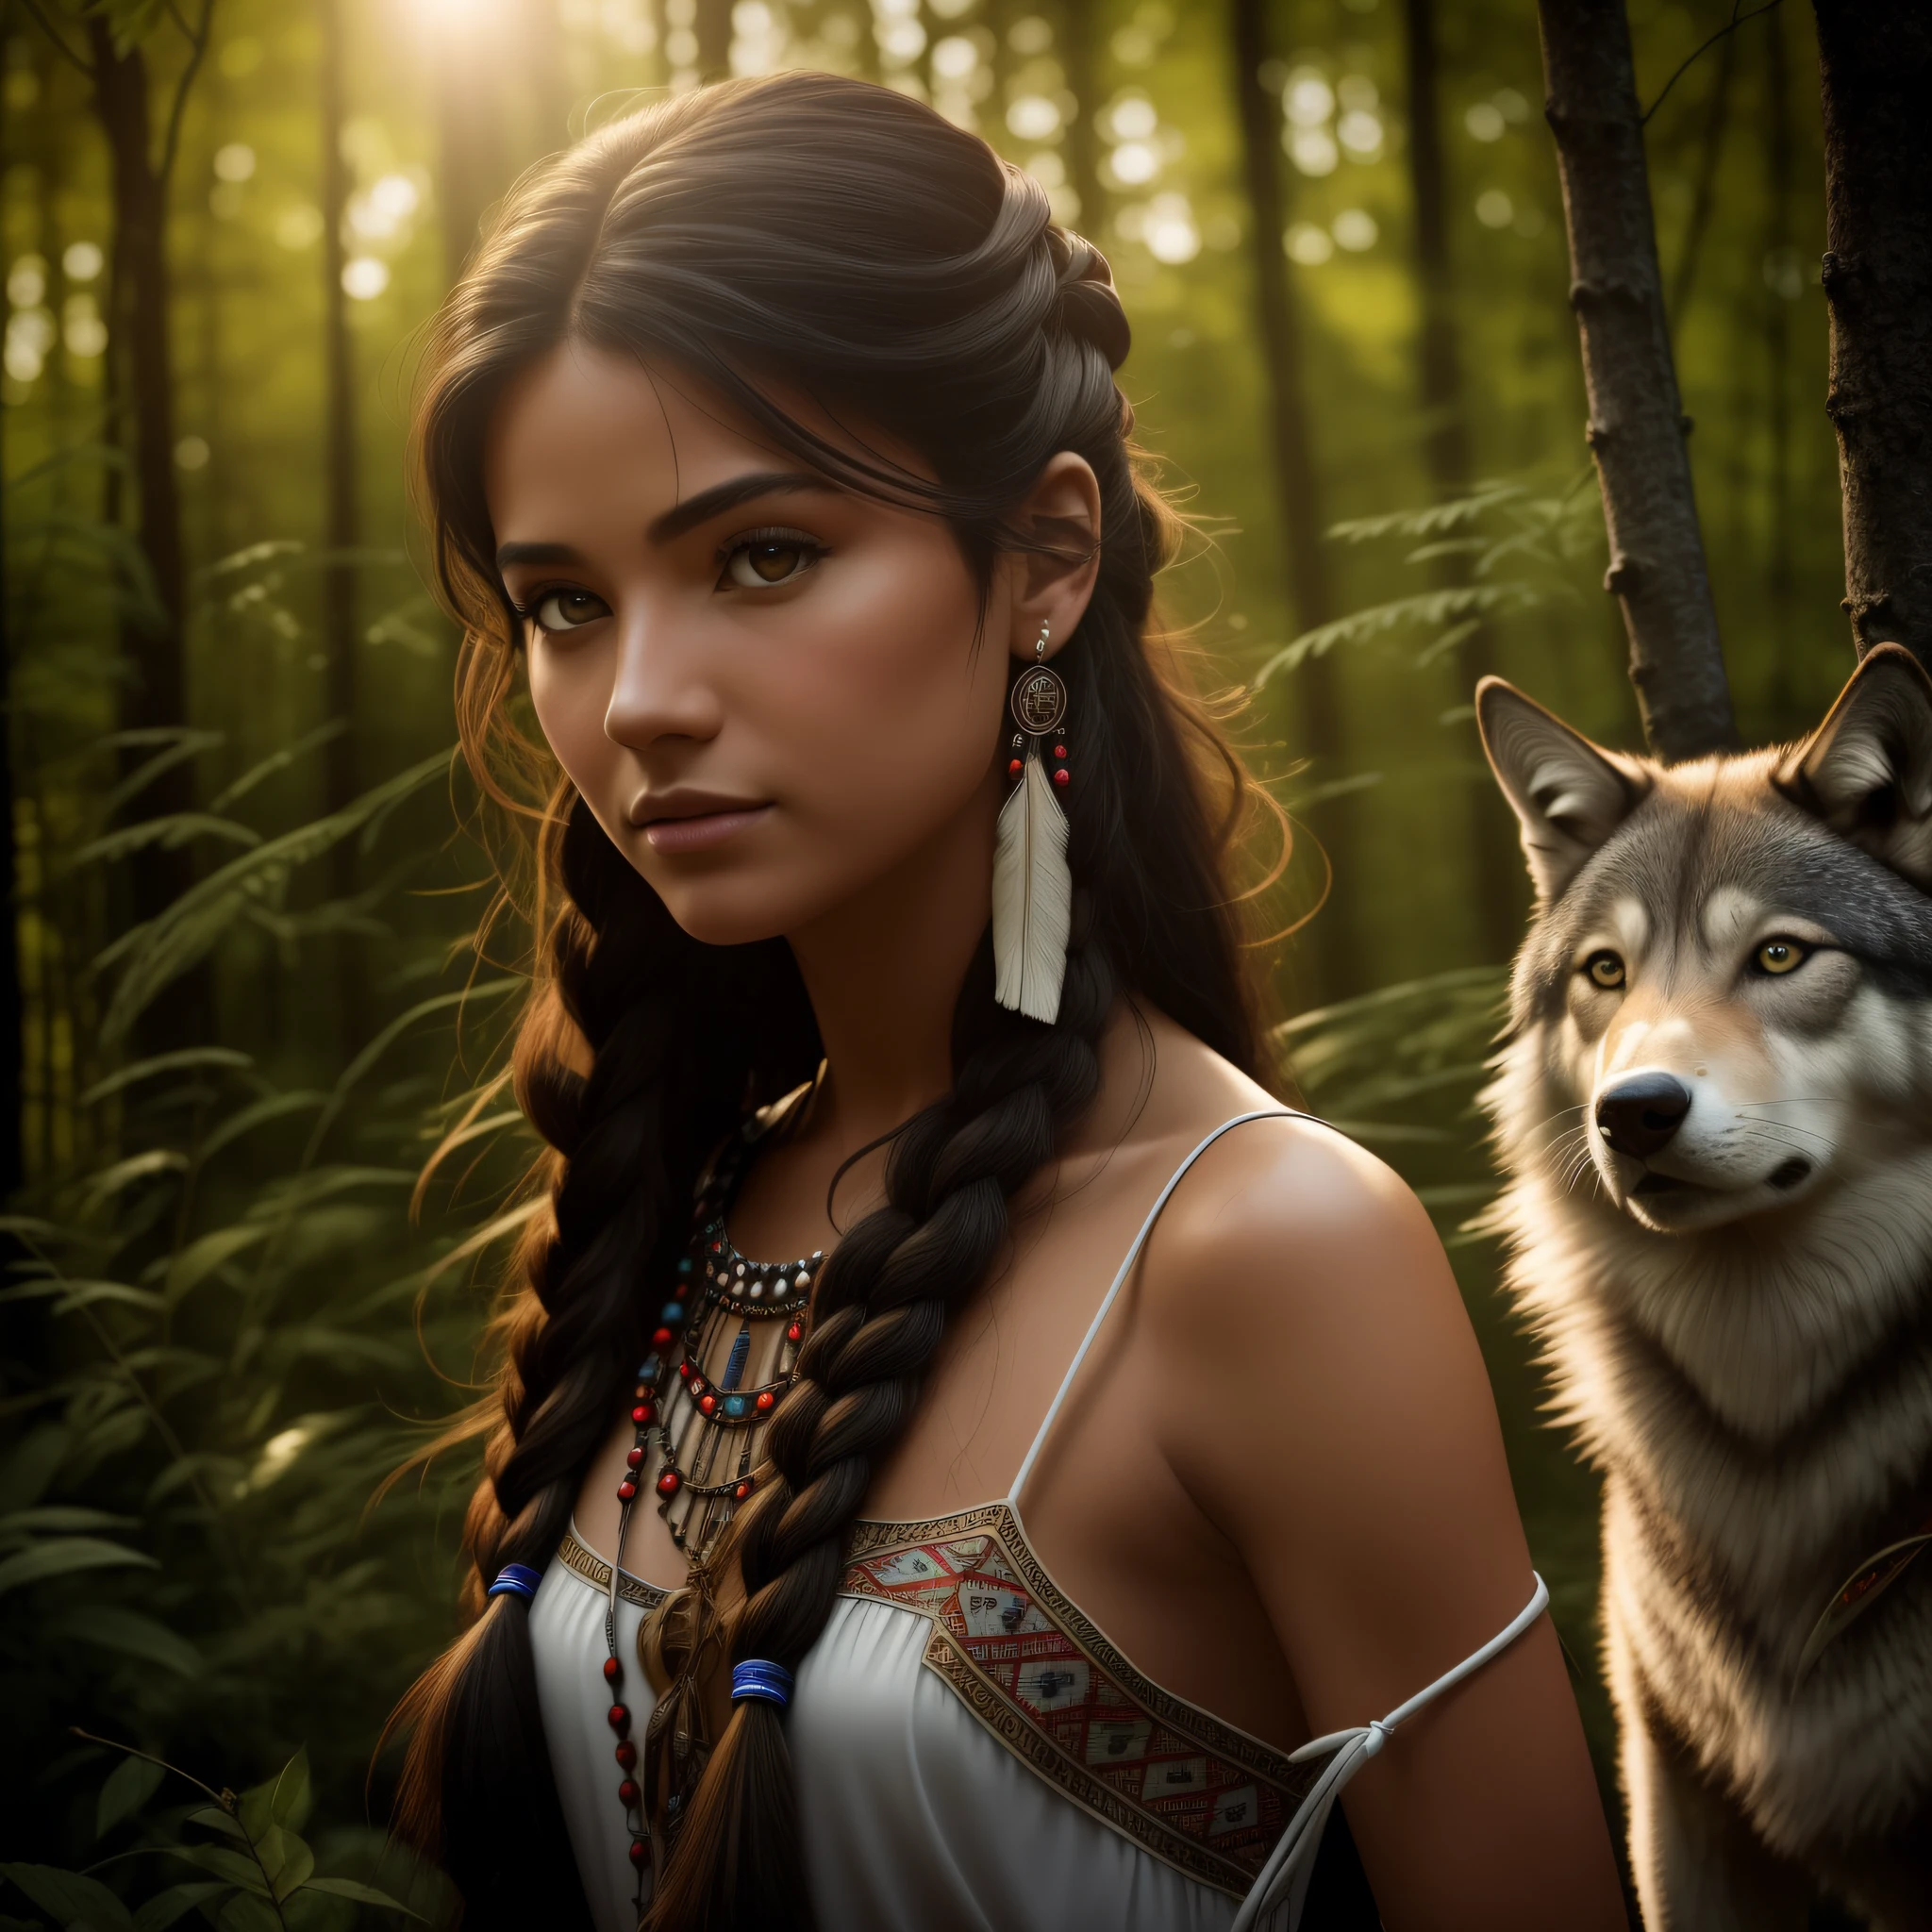 (최고의 품질, 걸작: 1.1), (실재론: 1.4),(걸작, 현실적인: 1.4), (극도의 정밀도: 1.2); (앞쪽: 1.3), 현실적인 portrait of a Native American girl with indigenous adornments with her ultra 현실적인 pet wolf in the forest, 부족의 드레스, 아주 긴 머리, 벌거벗은 어깨, 밤하늘, 갤럭시 글로우, 대양, 물, 머리 기울임, 바람, 구름, 자연광, 집 밖의, 홀로, 부서지다, 영화 같은 빛, 초고해상도, 8k어, 필름비즈,  완벽한 해부학, Delicate and 연약한 skin, 최고의 그림자, 연약한, 날것의, 높은 해상도, 여자 사냥꾼, 밤, 보름달 밝기.